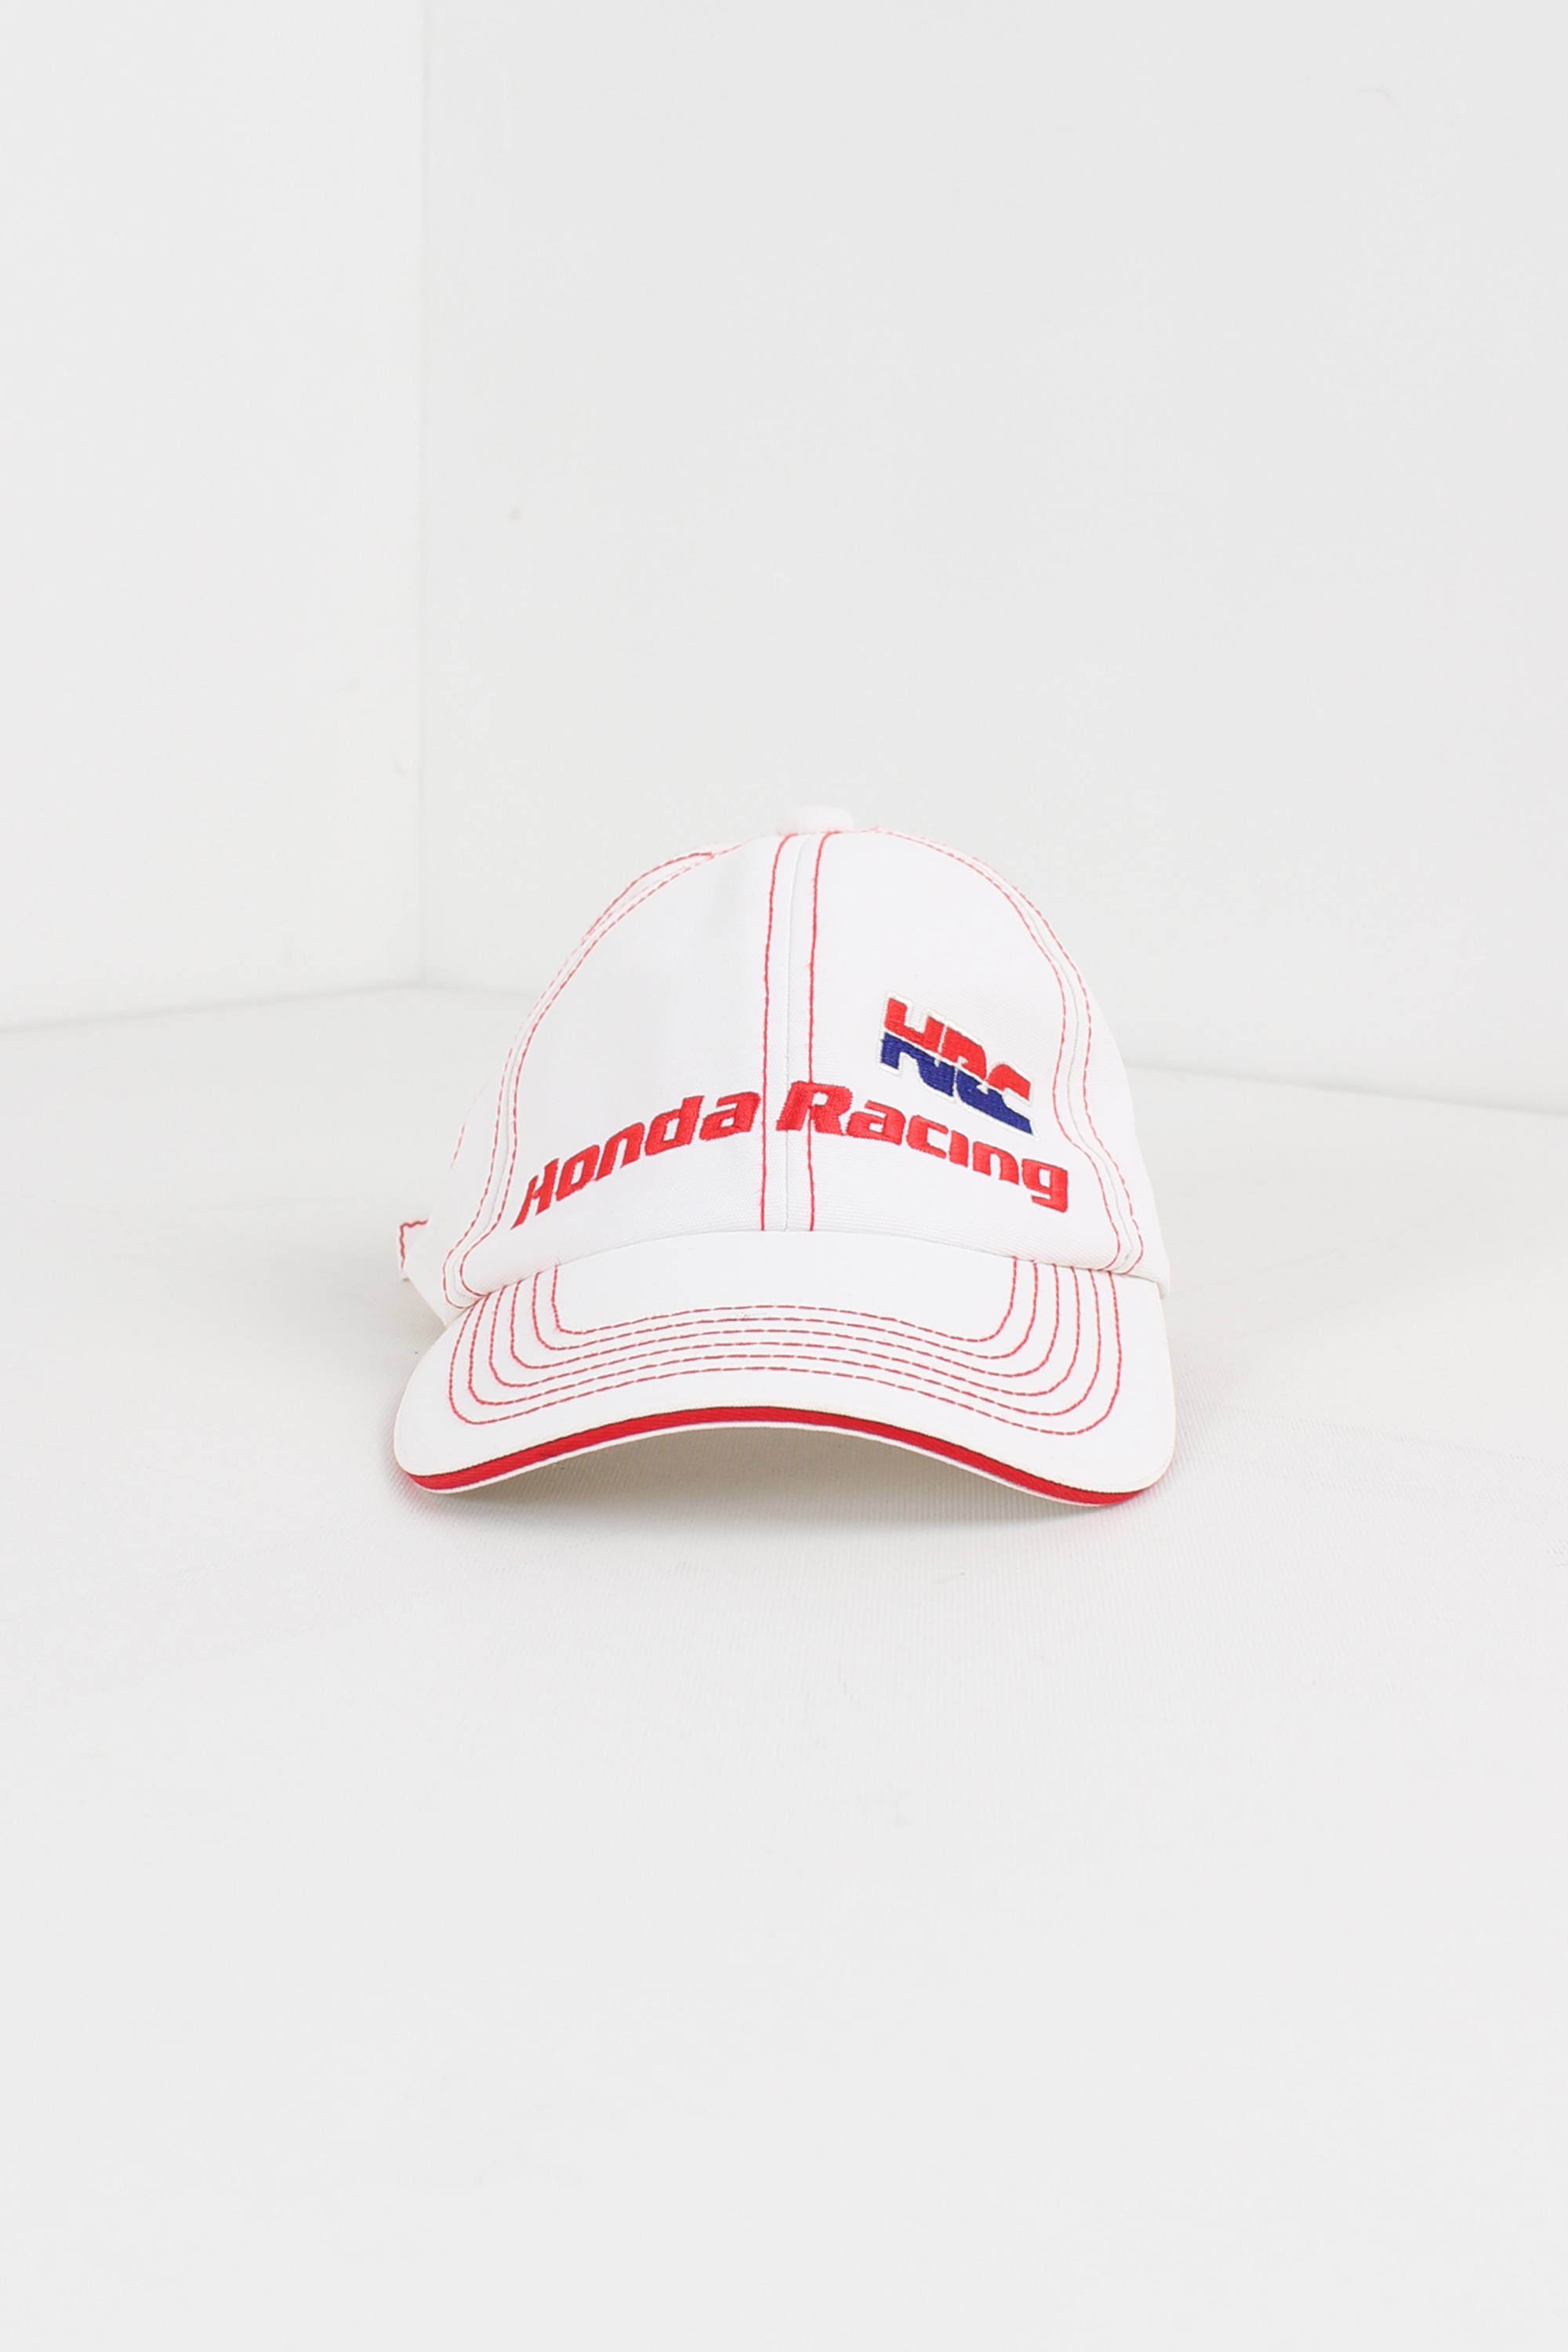 HONDA racing cap